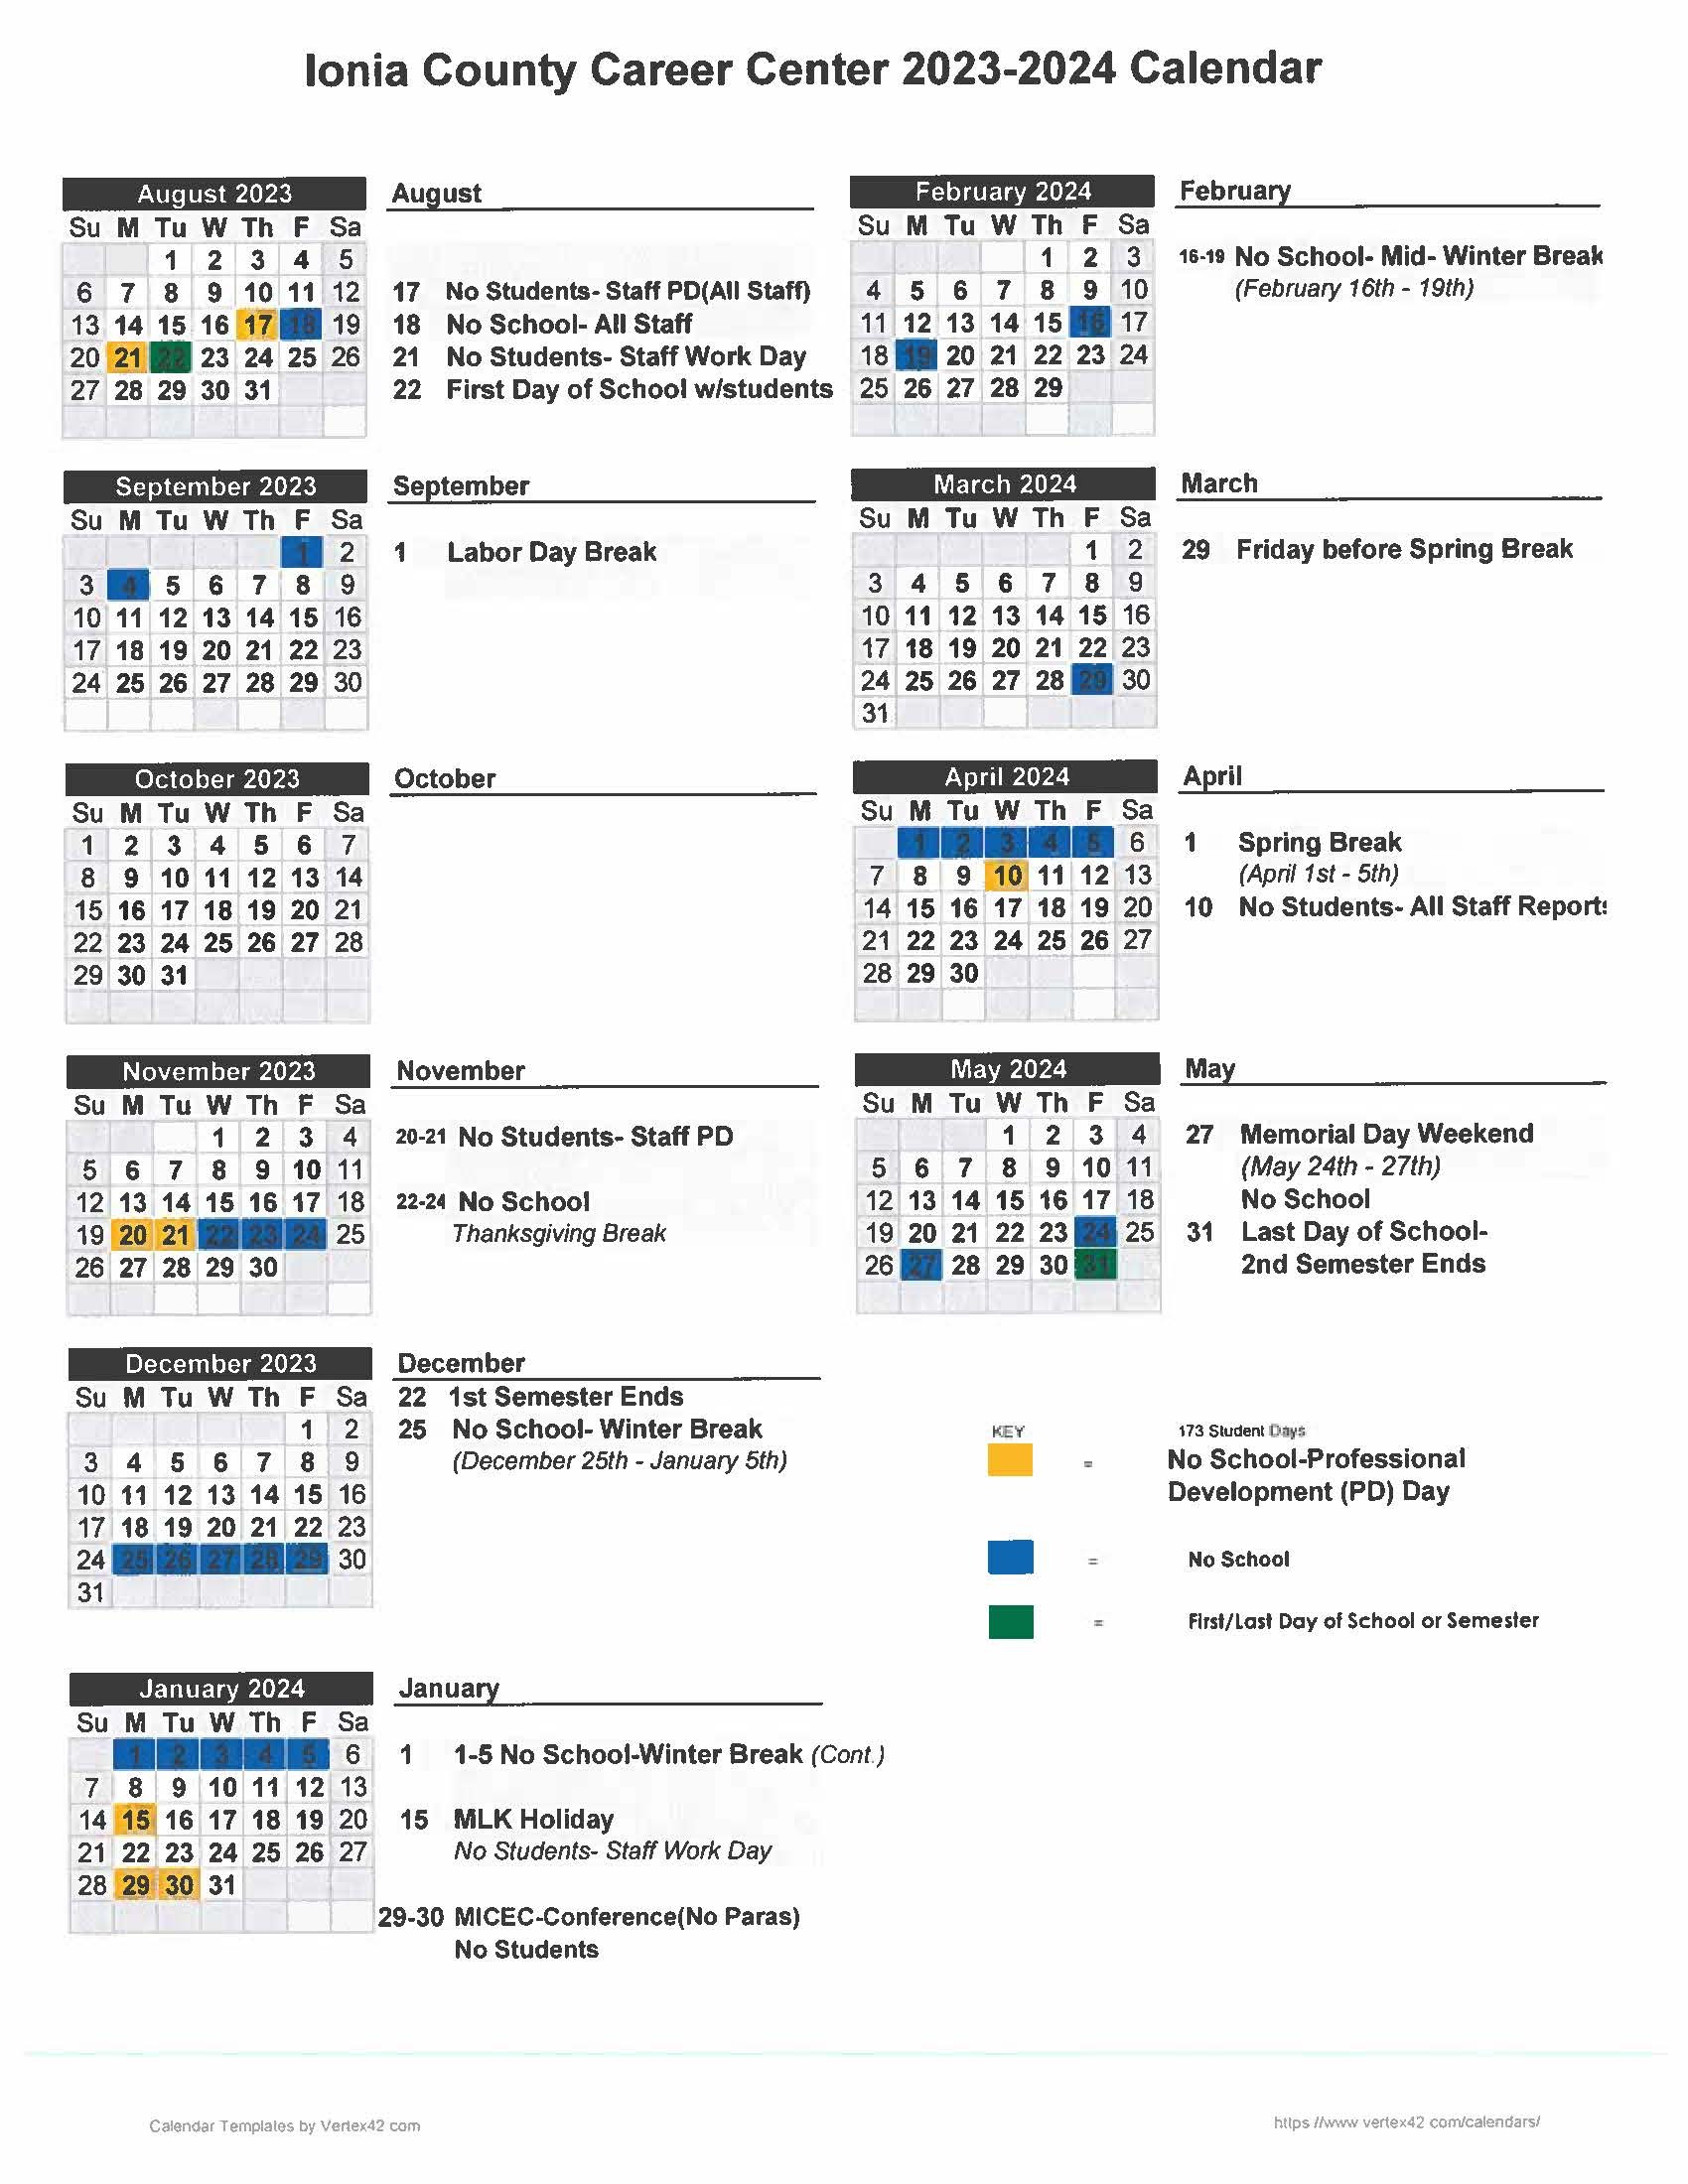 2023-2024 Ionia County Career Center Calendar